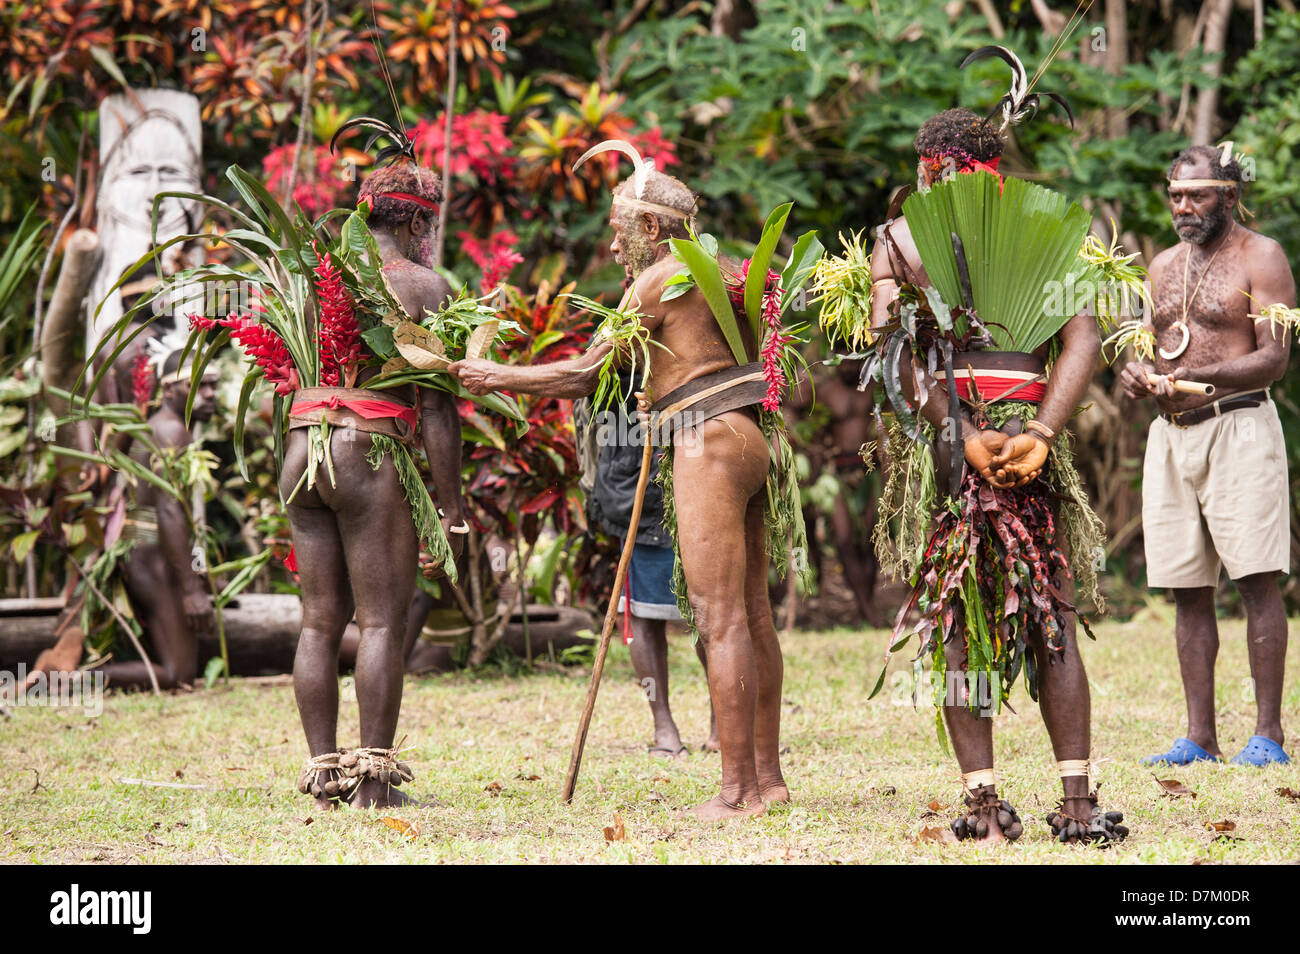 Eine Ordinationszeremonie für ein neues Dorf Chef und seinem Stellvertreter, Teil einer Festival der traditionellen Kultur, Labo Dorf, Vanuatu Stockfoto